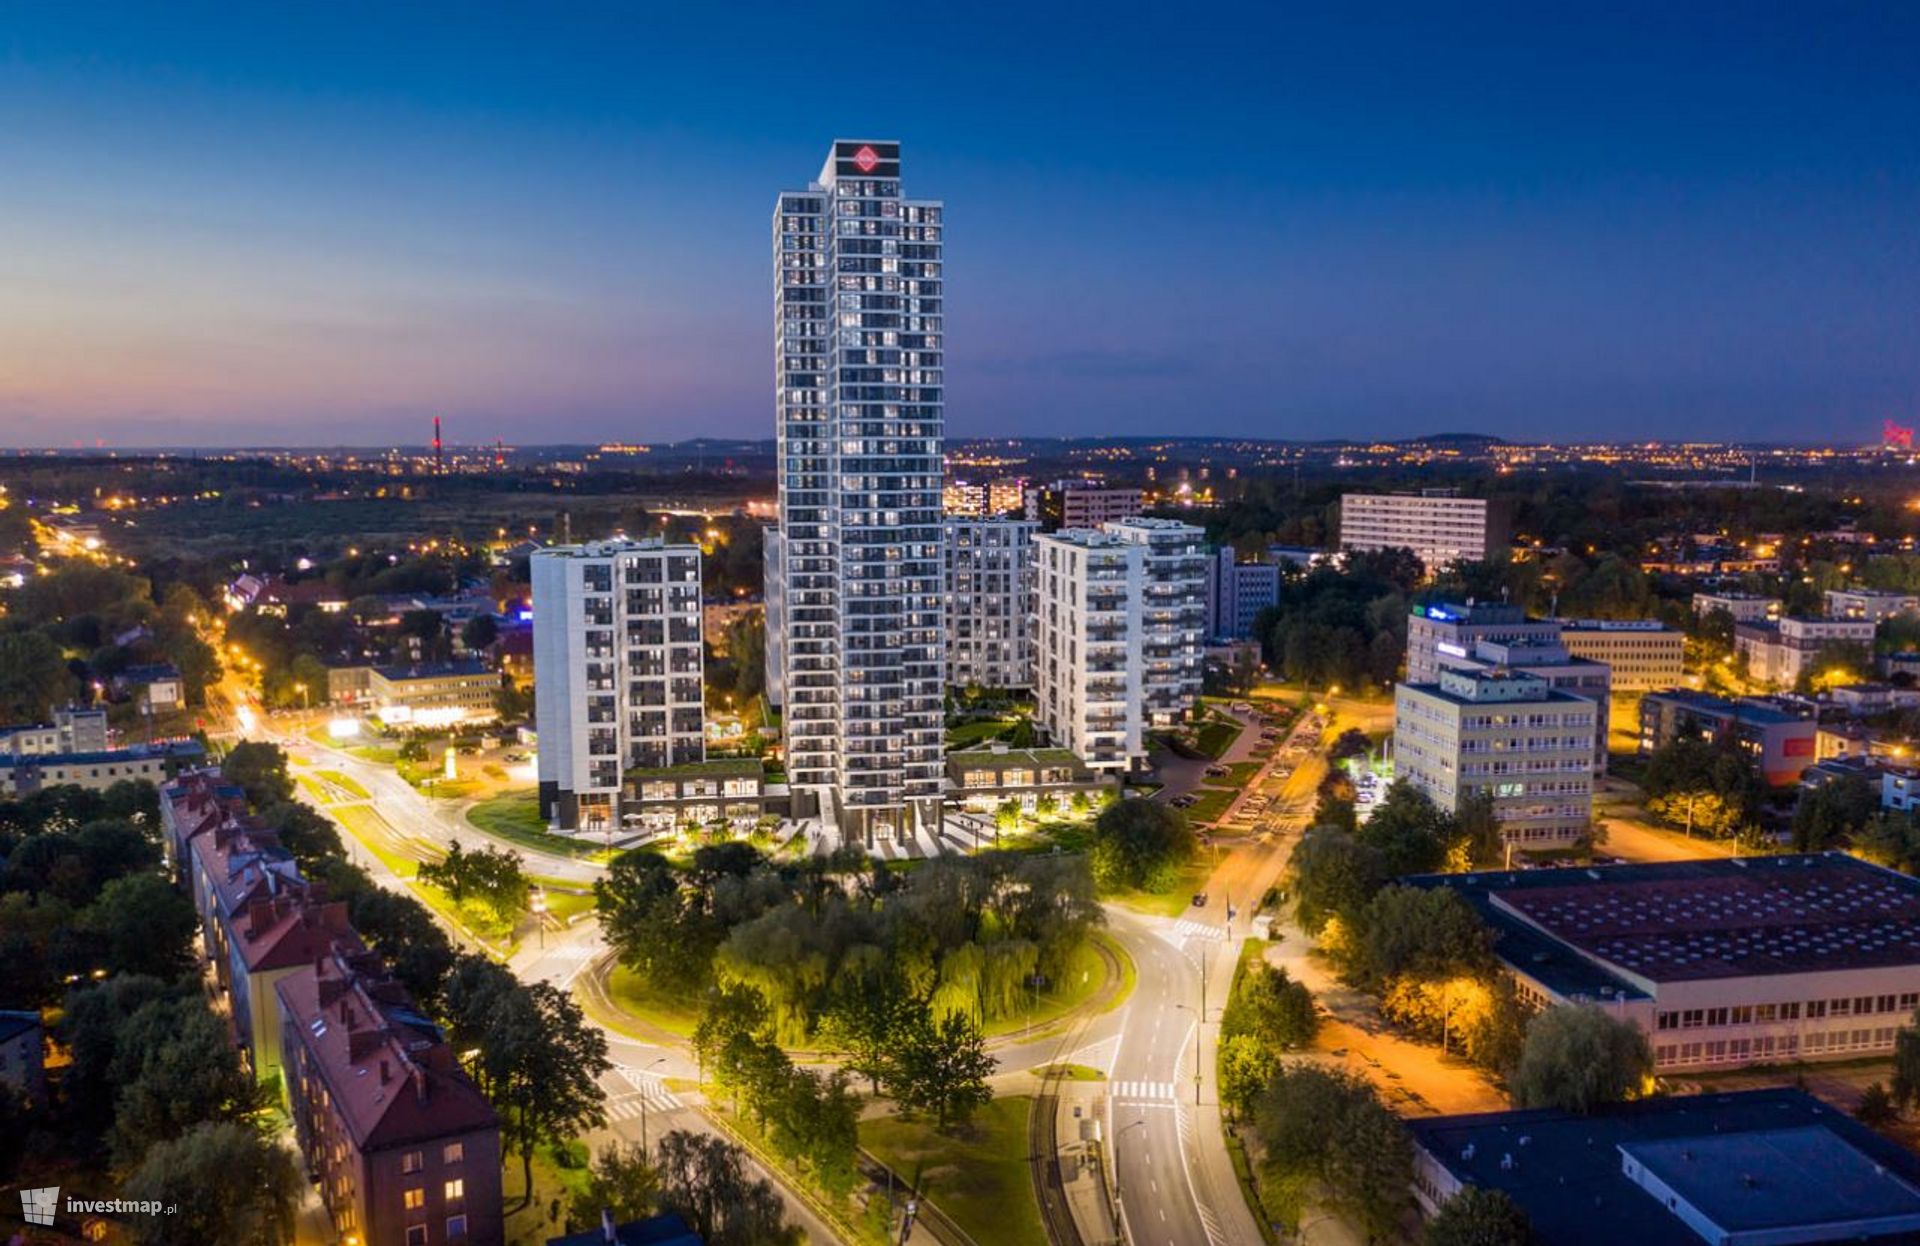 W Katowicach powstaje kompleks wielofunkcyjny ATAL Sky+ ze 121-metrowym wieżowcem 